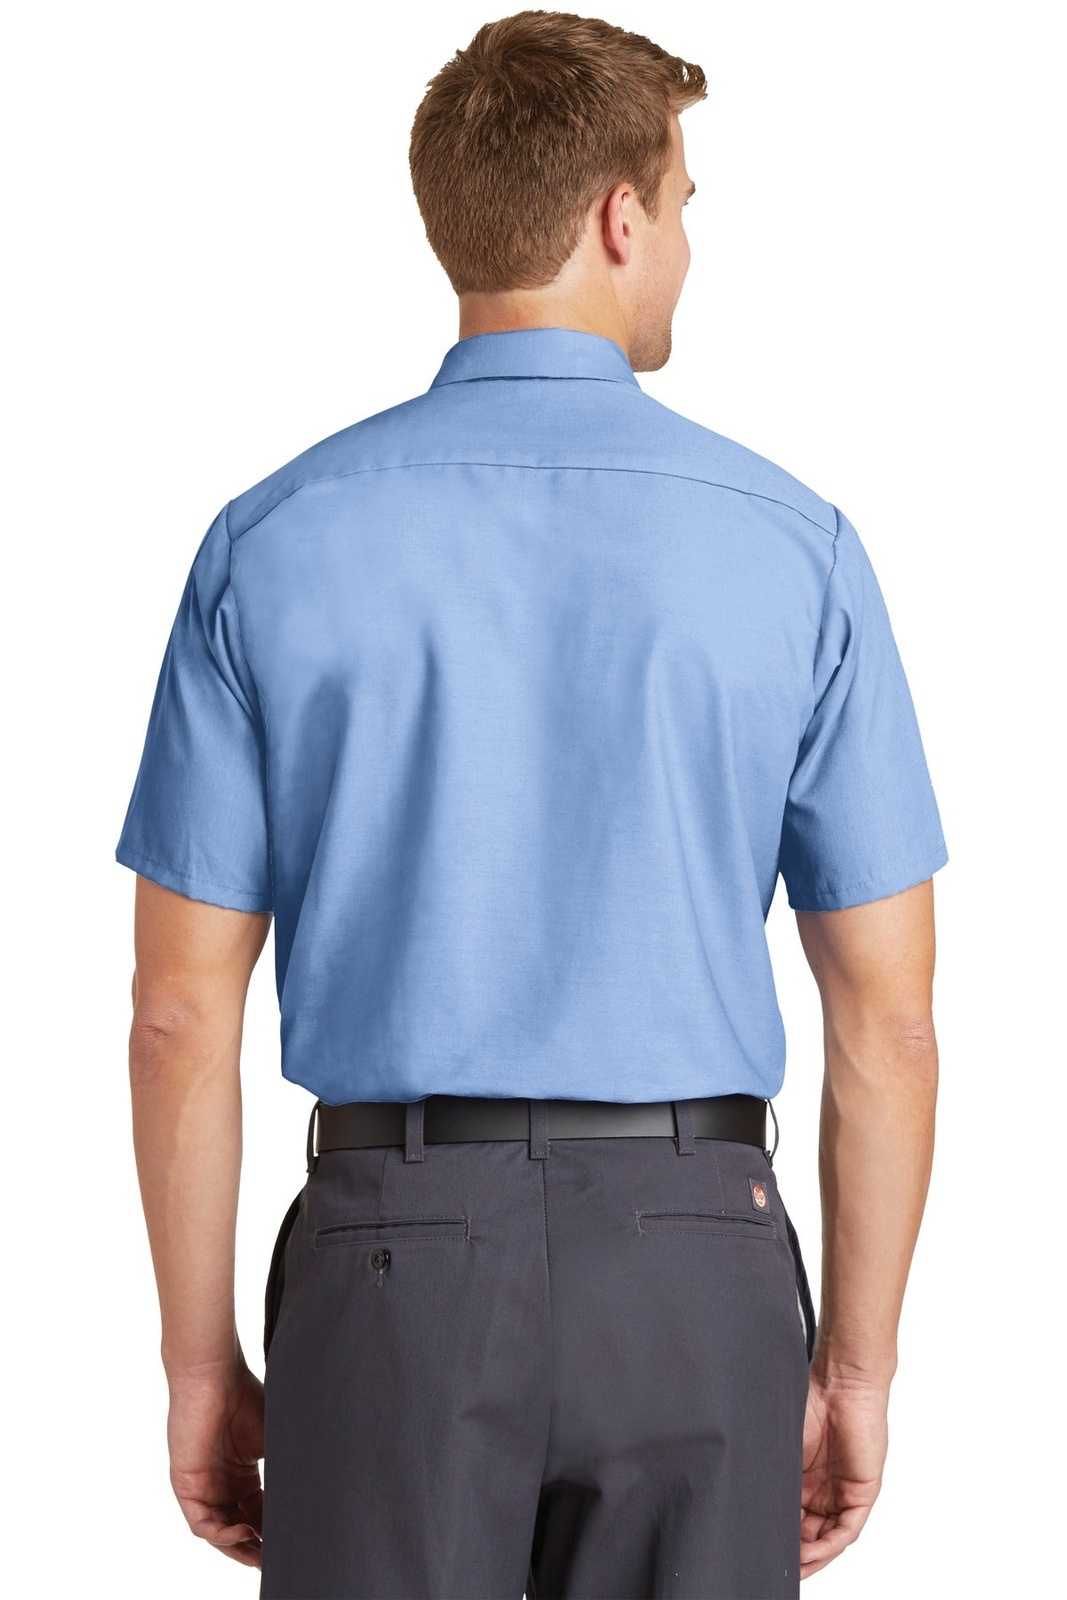 Red Kap SP24 Short Sleeve Industrial Work Shirt - Light Blue - HIT a Double - 1